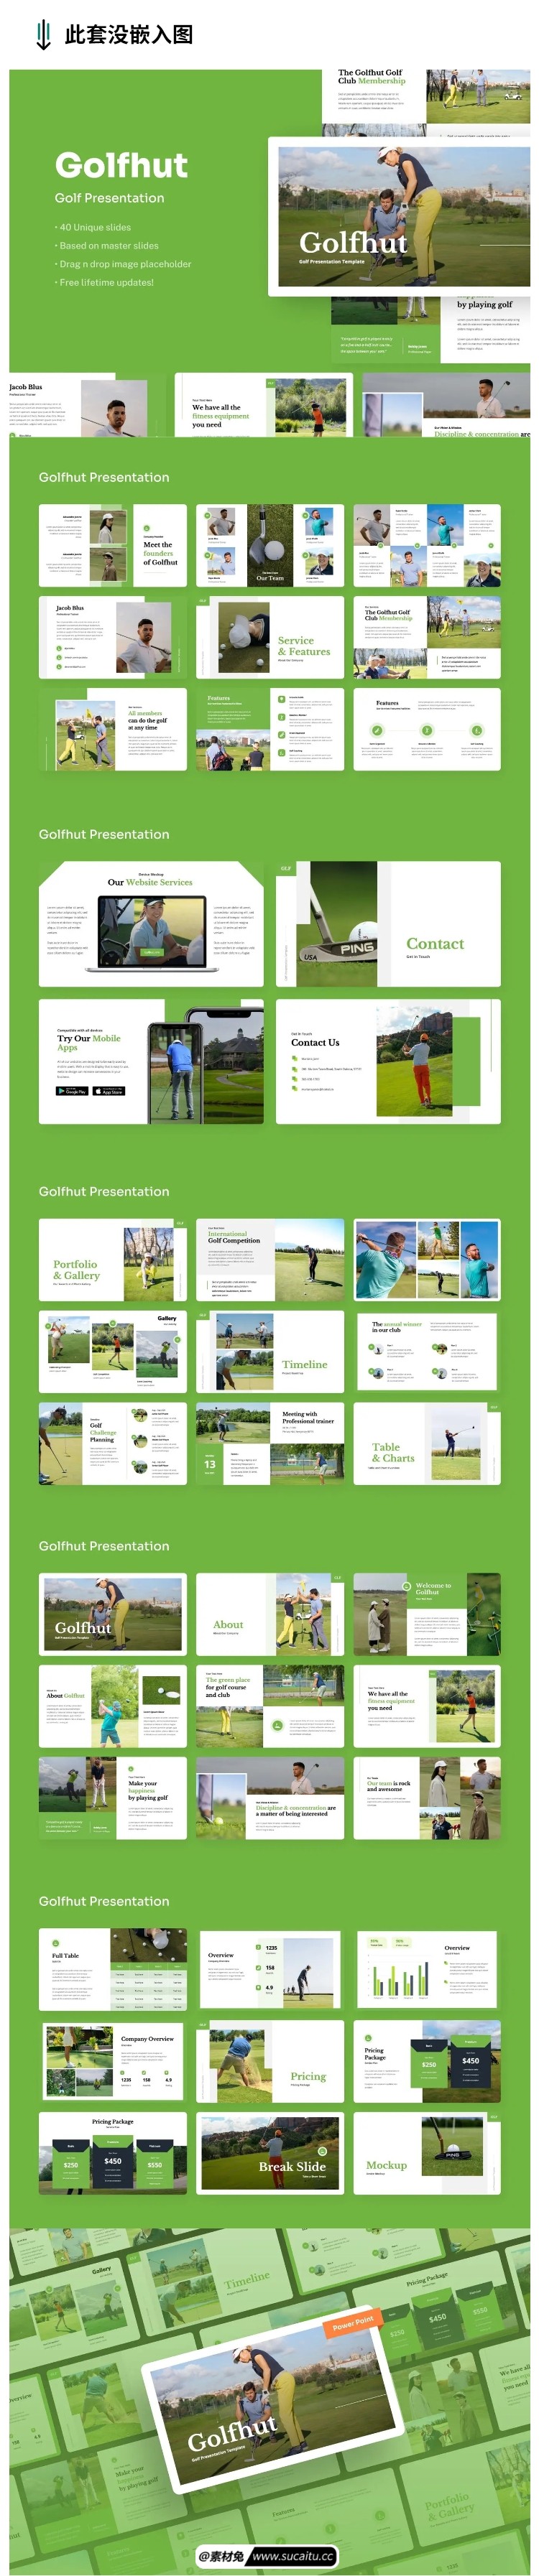 10套体育健身类创意PPT模板绿色健康户外教学课件比赛营销活动策划PPT